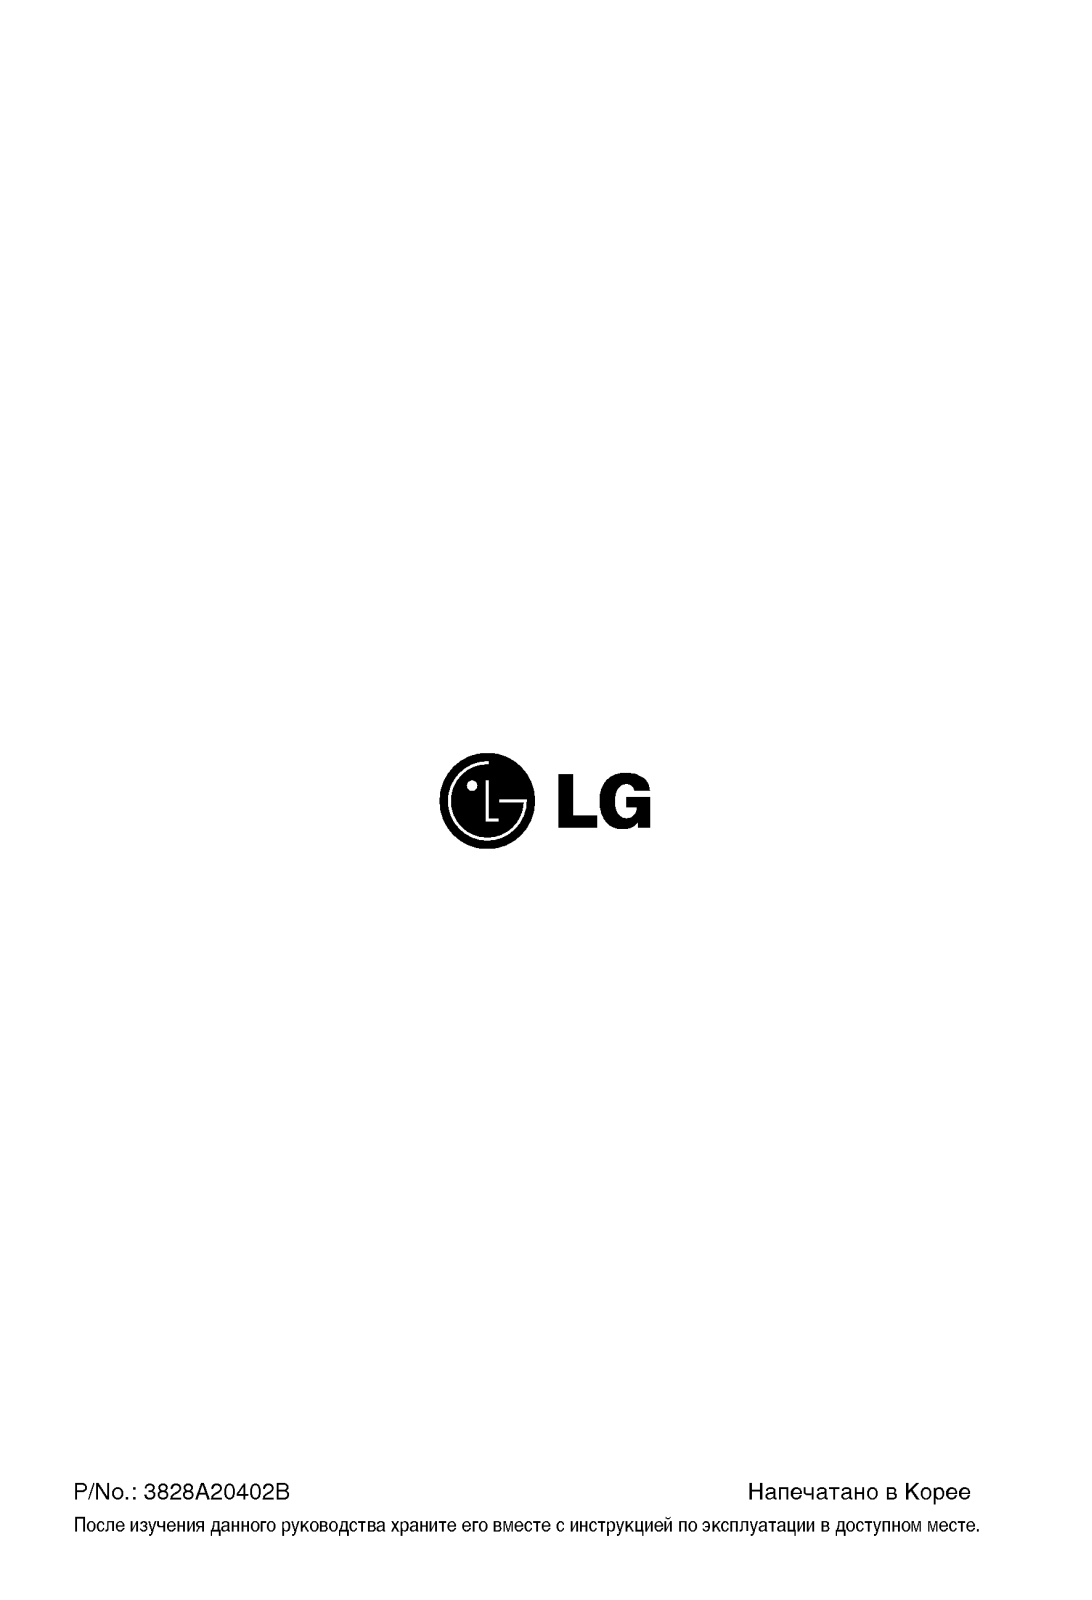 LG G07LH User Manual